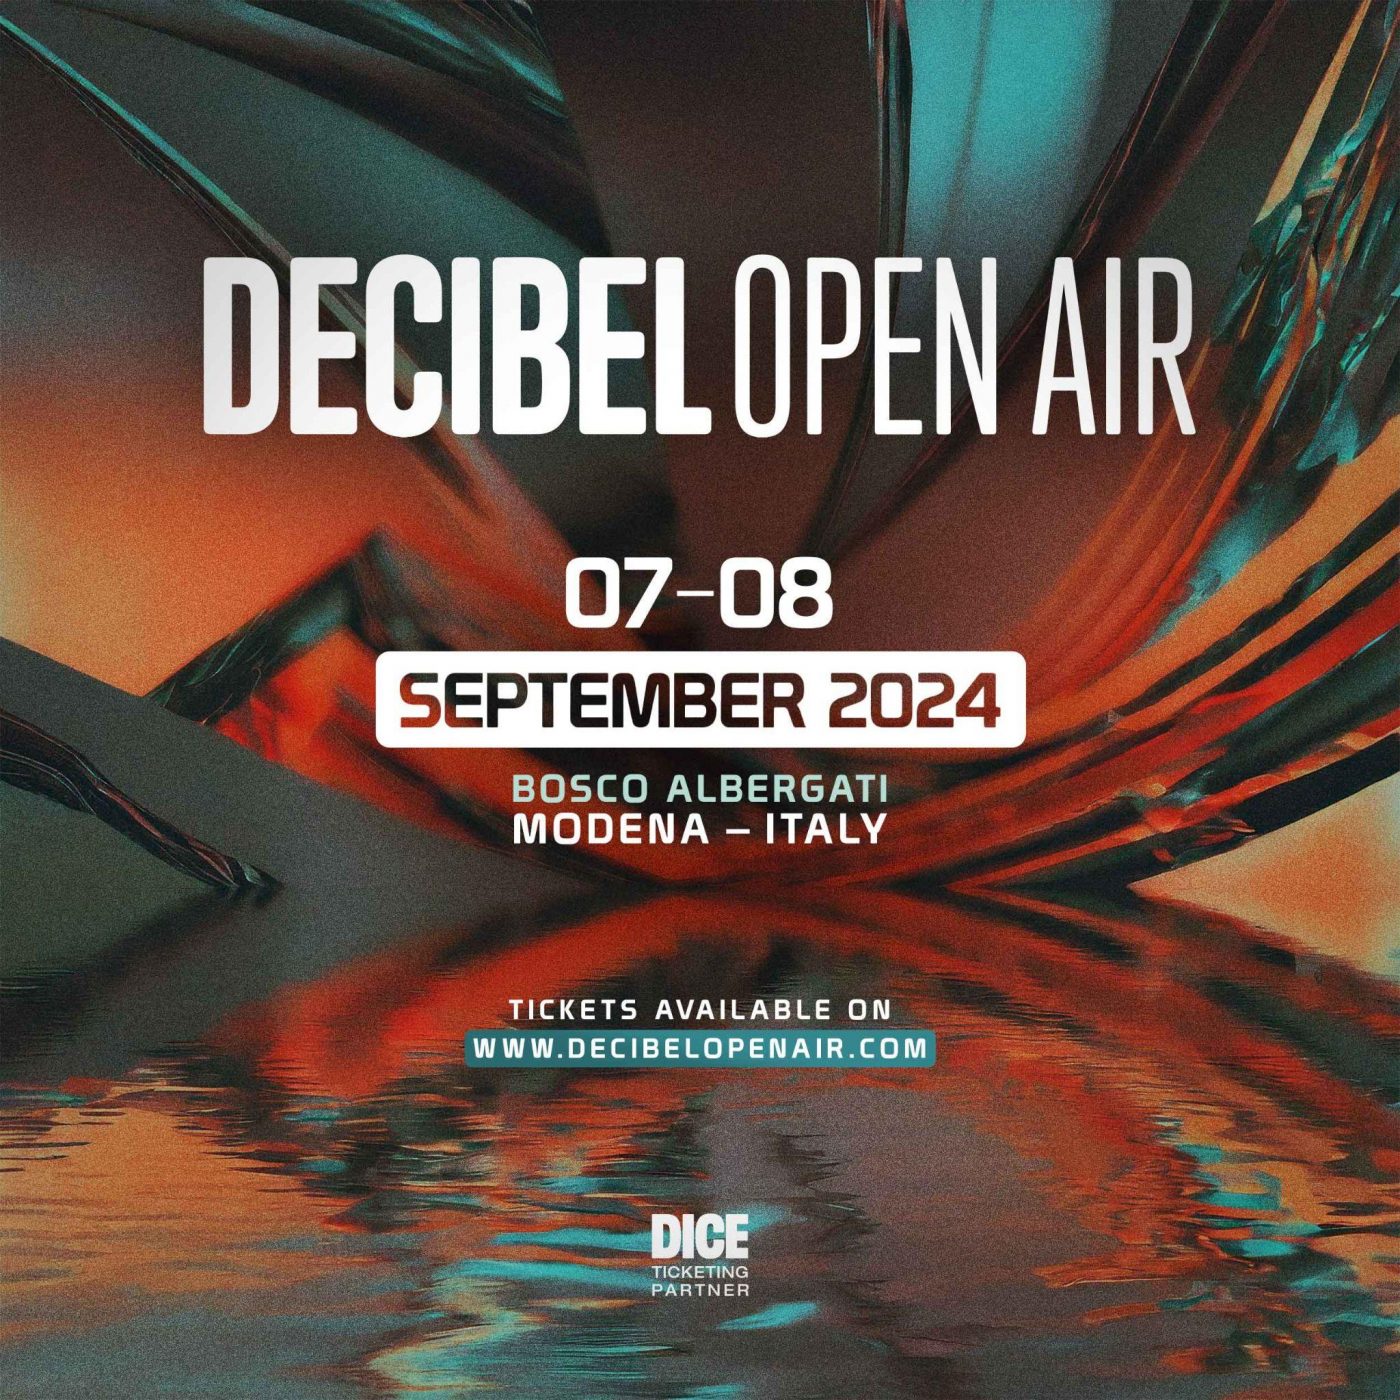 Decibel Open